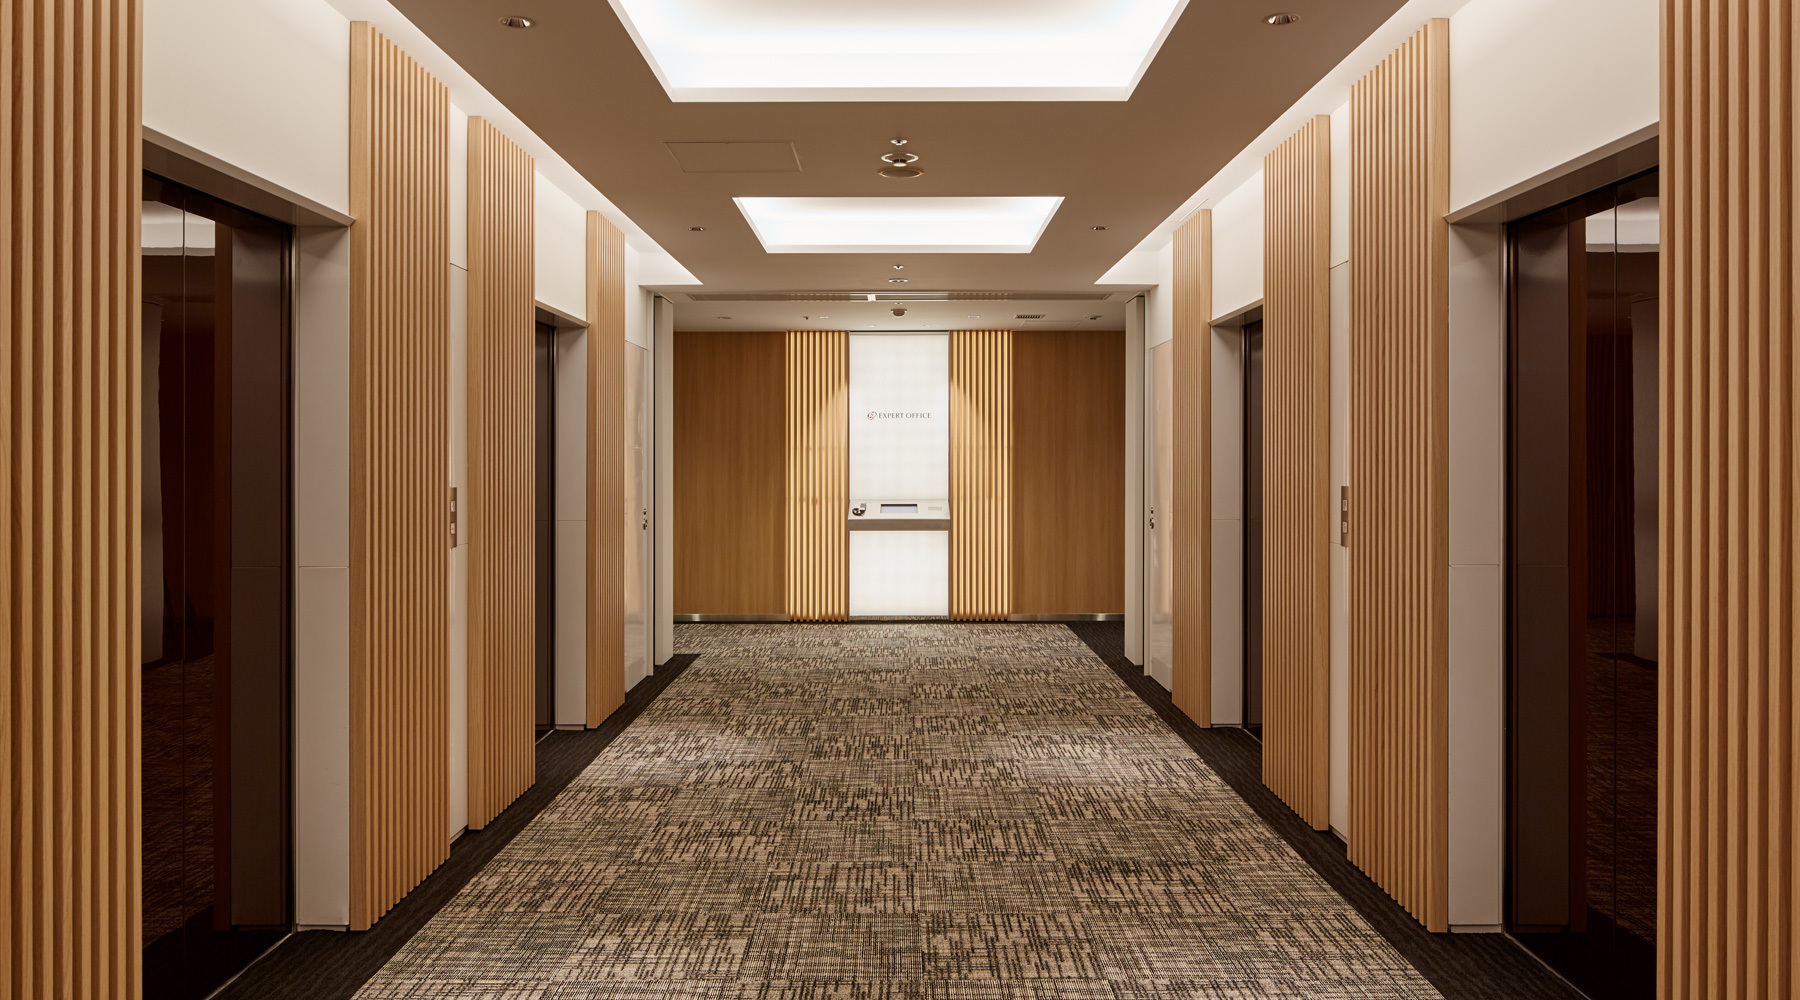 Elevator hall_Luxurious space like a hotel!